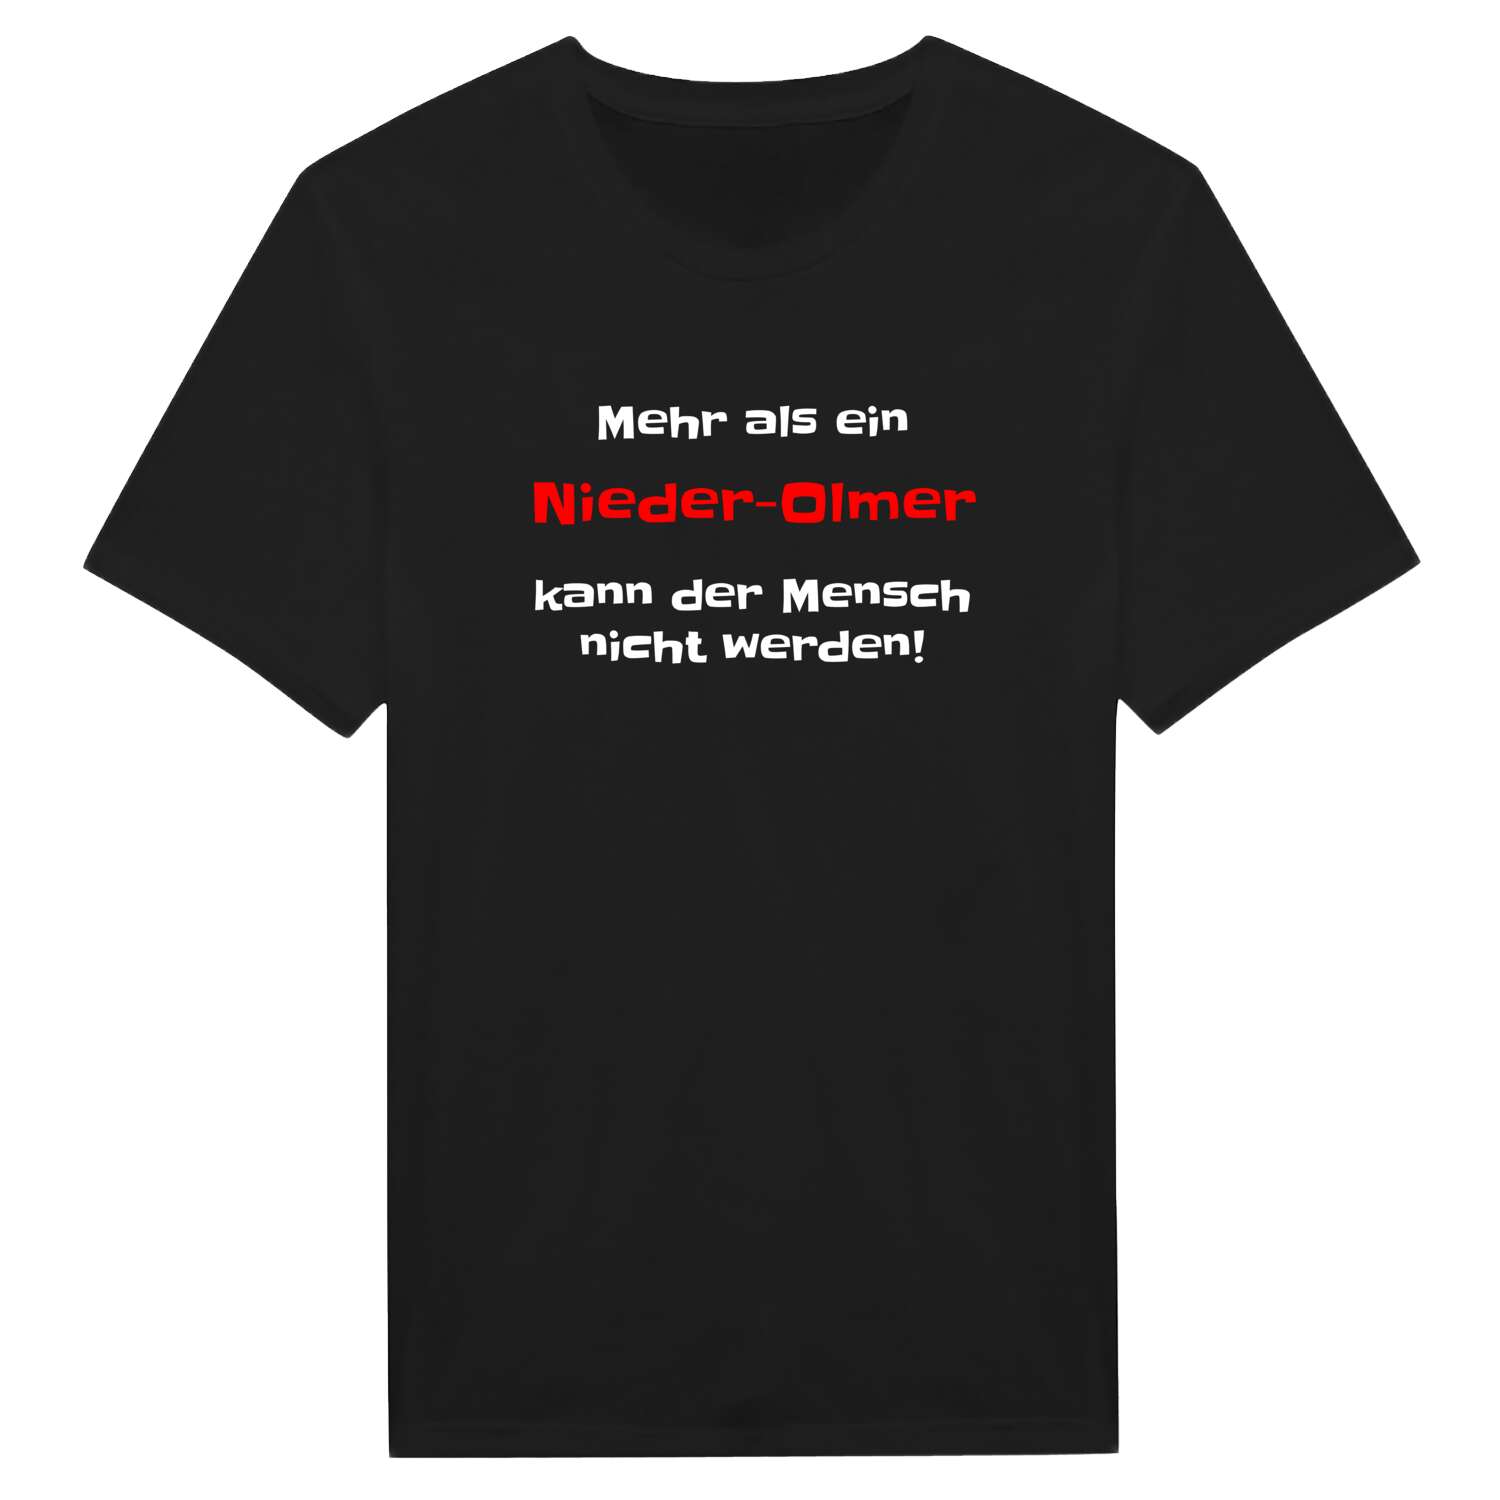 Nieder-Olm T-Shirt »Mehr als ein«